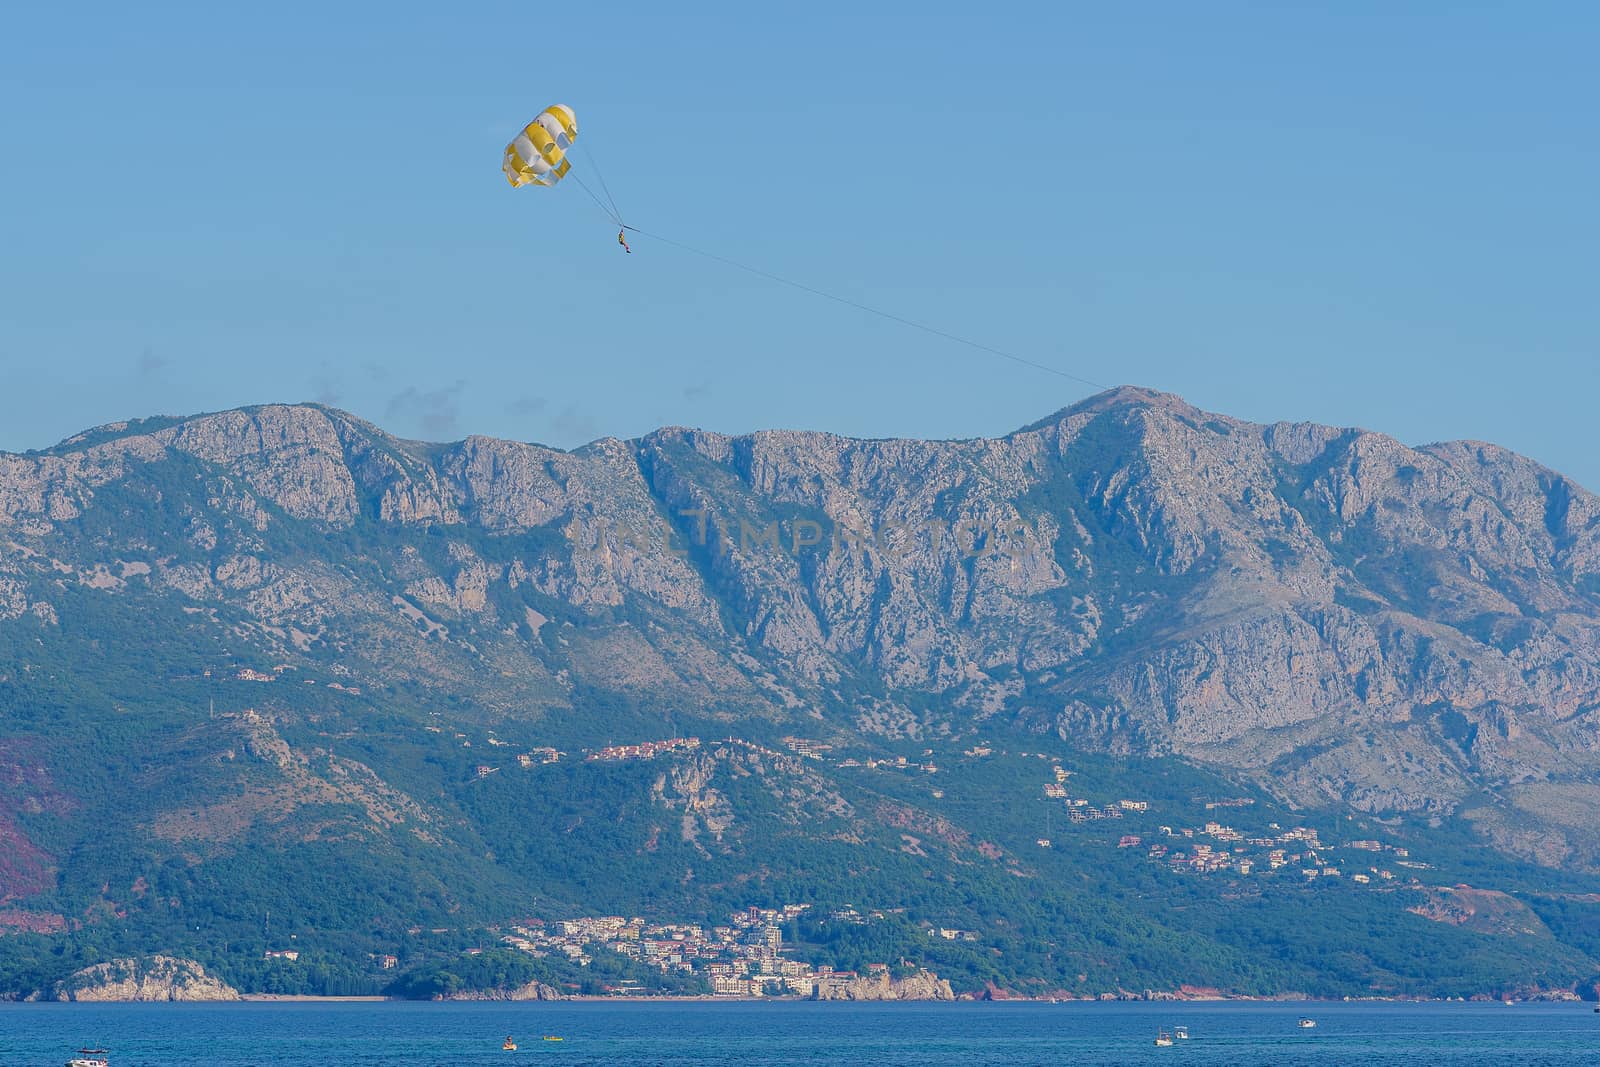 Parasailing. Man parachuting behind a boat  by VADIM